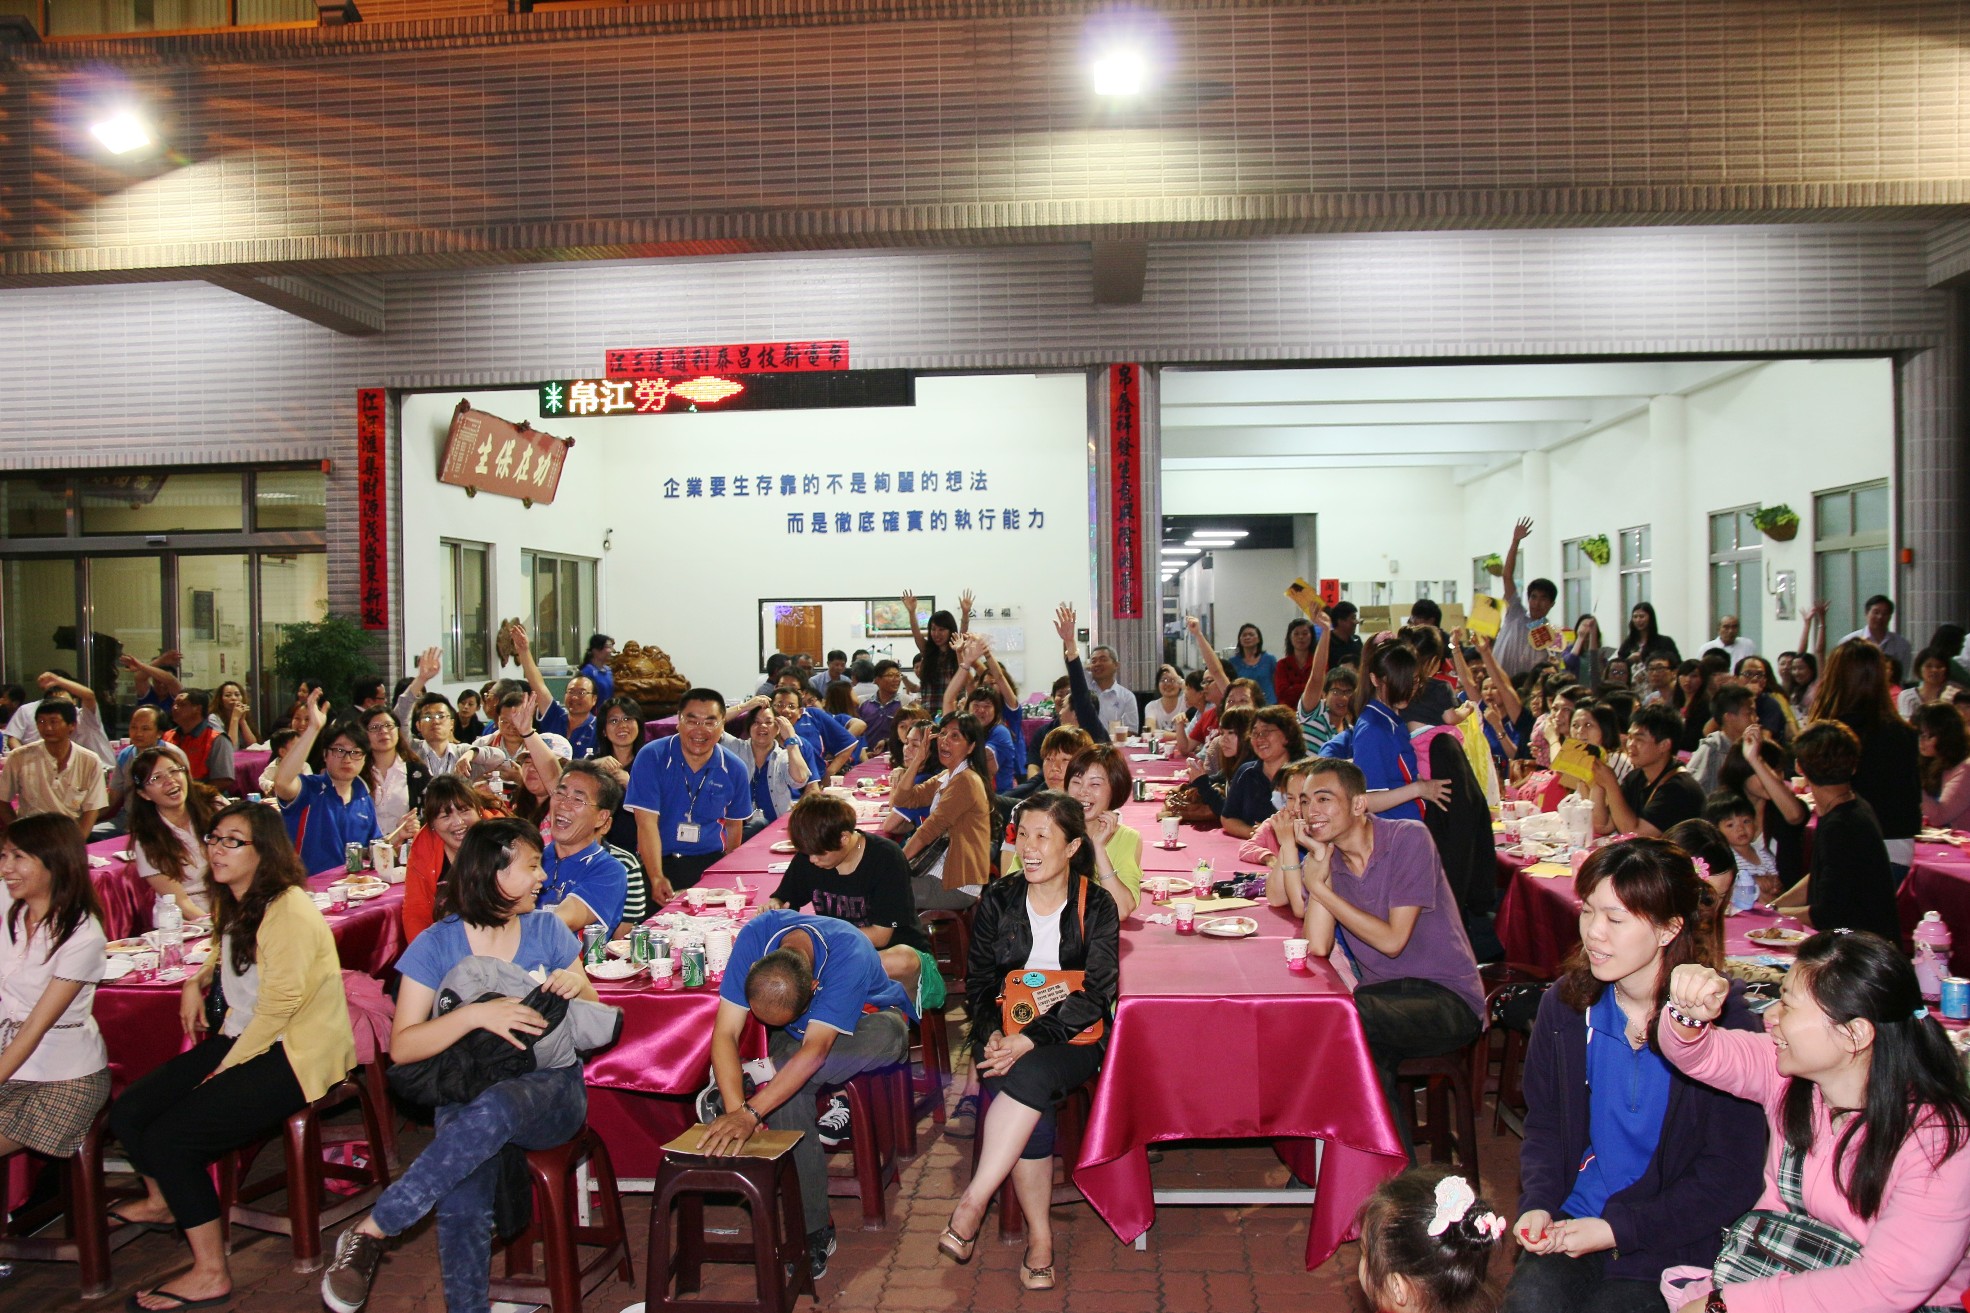 2014年 帛江科技 五一労働節のイブニングパーティー